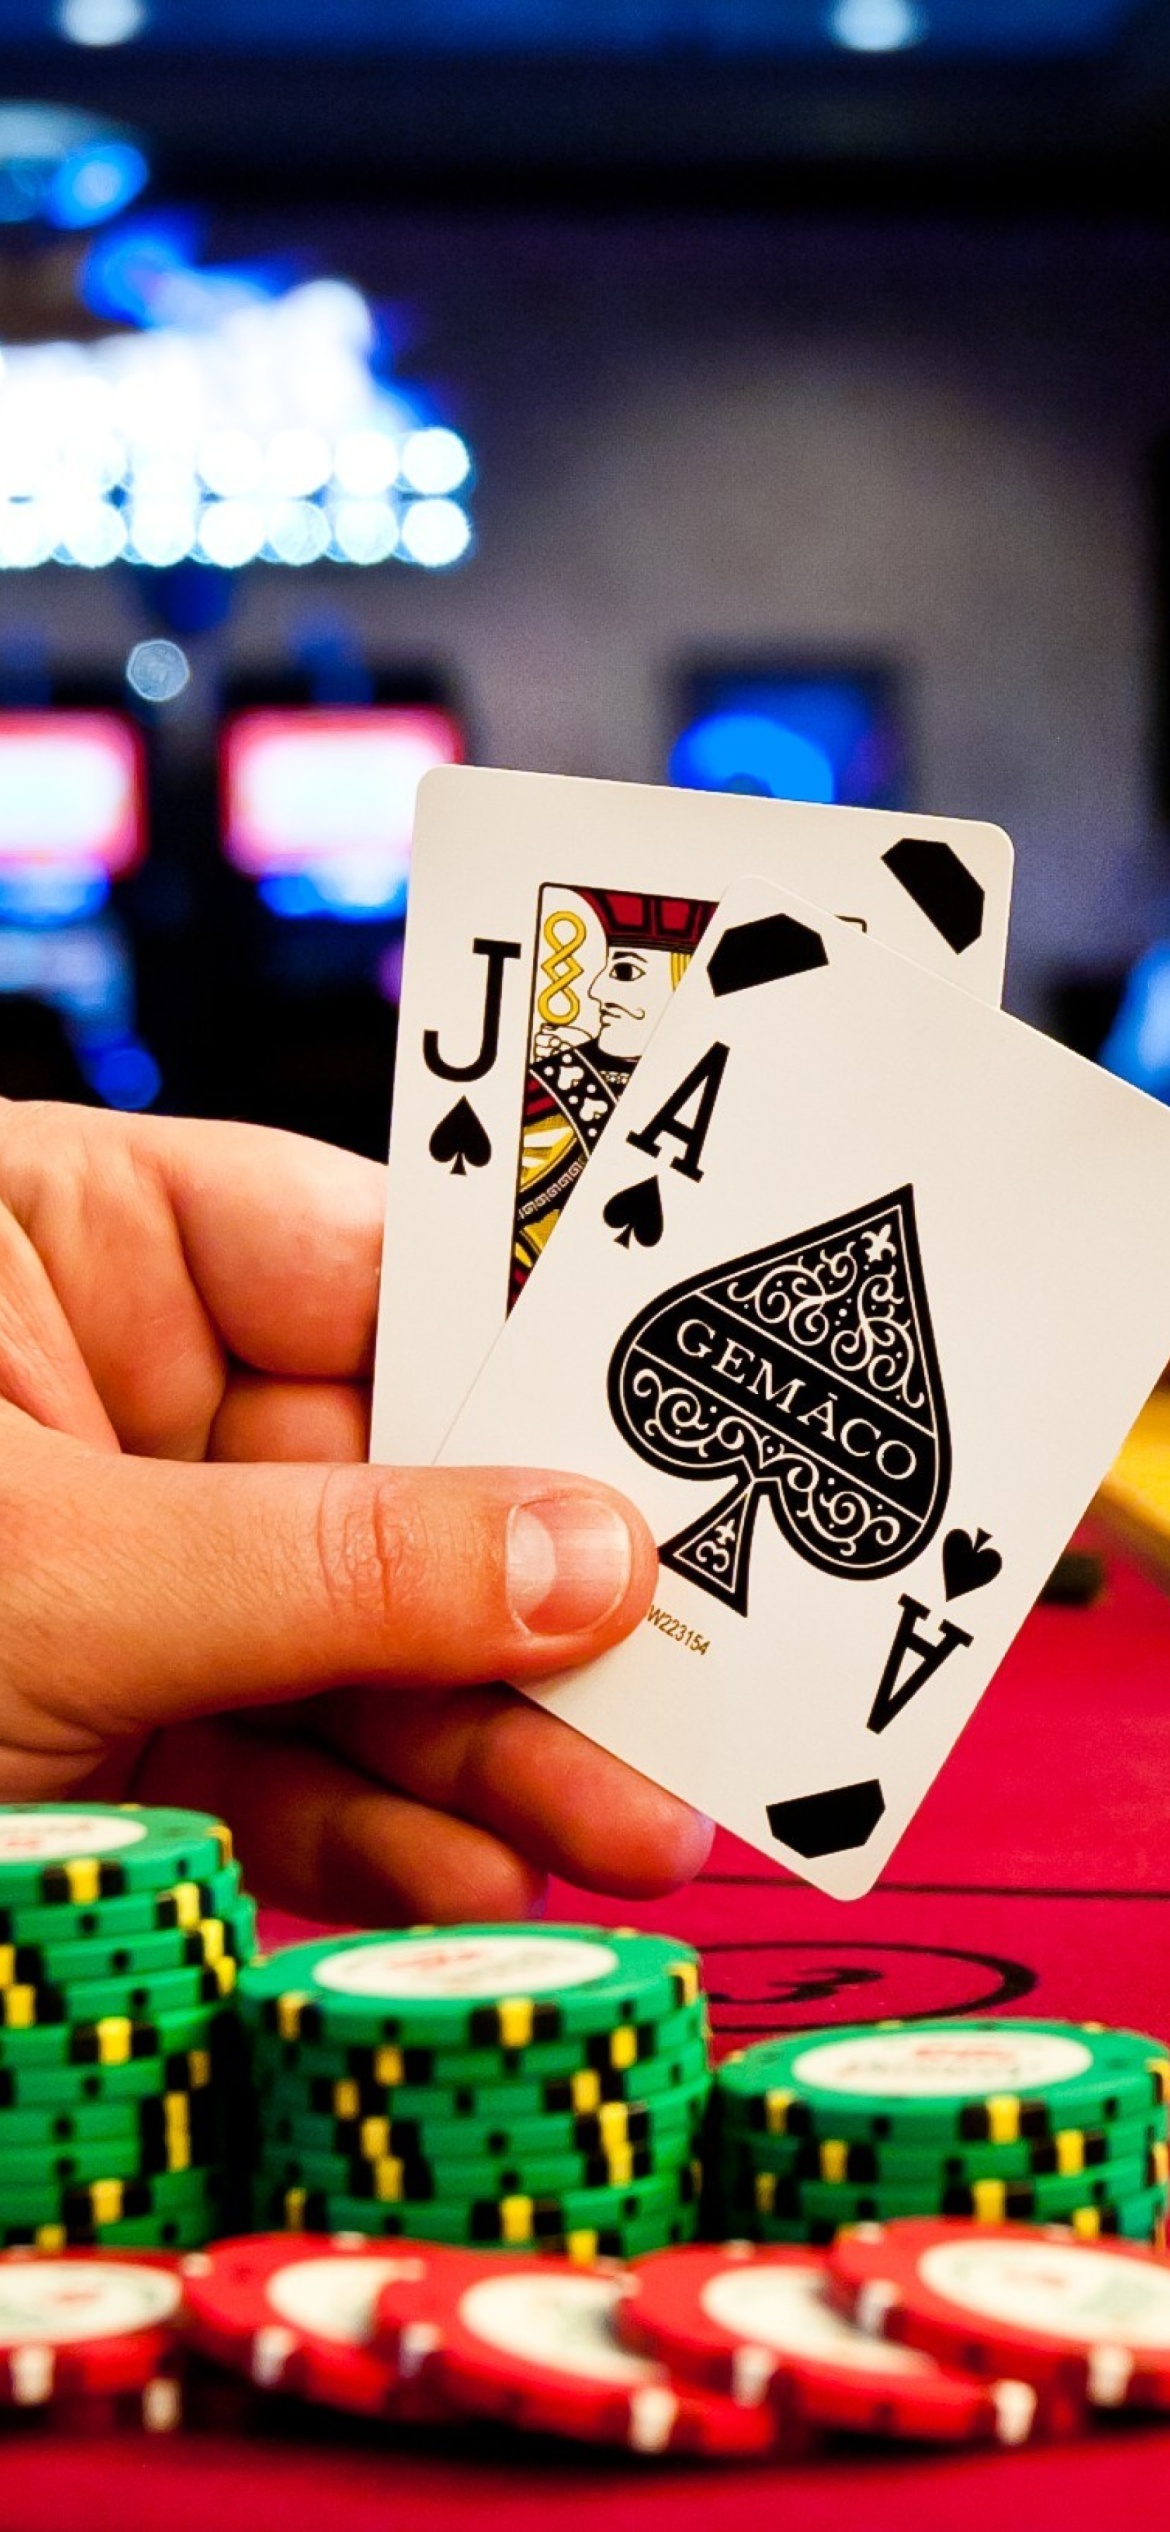 Обои Play blackjack in Casino 1170x2532